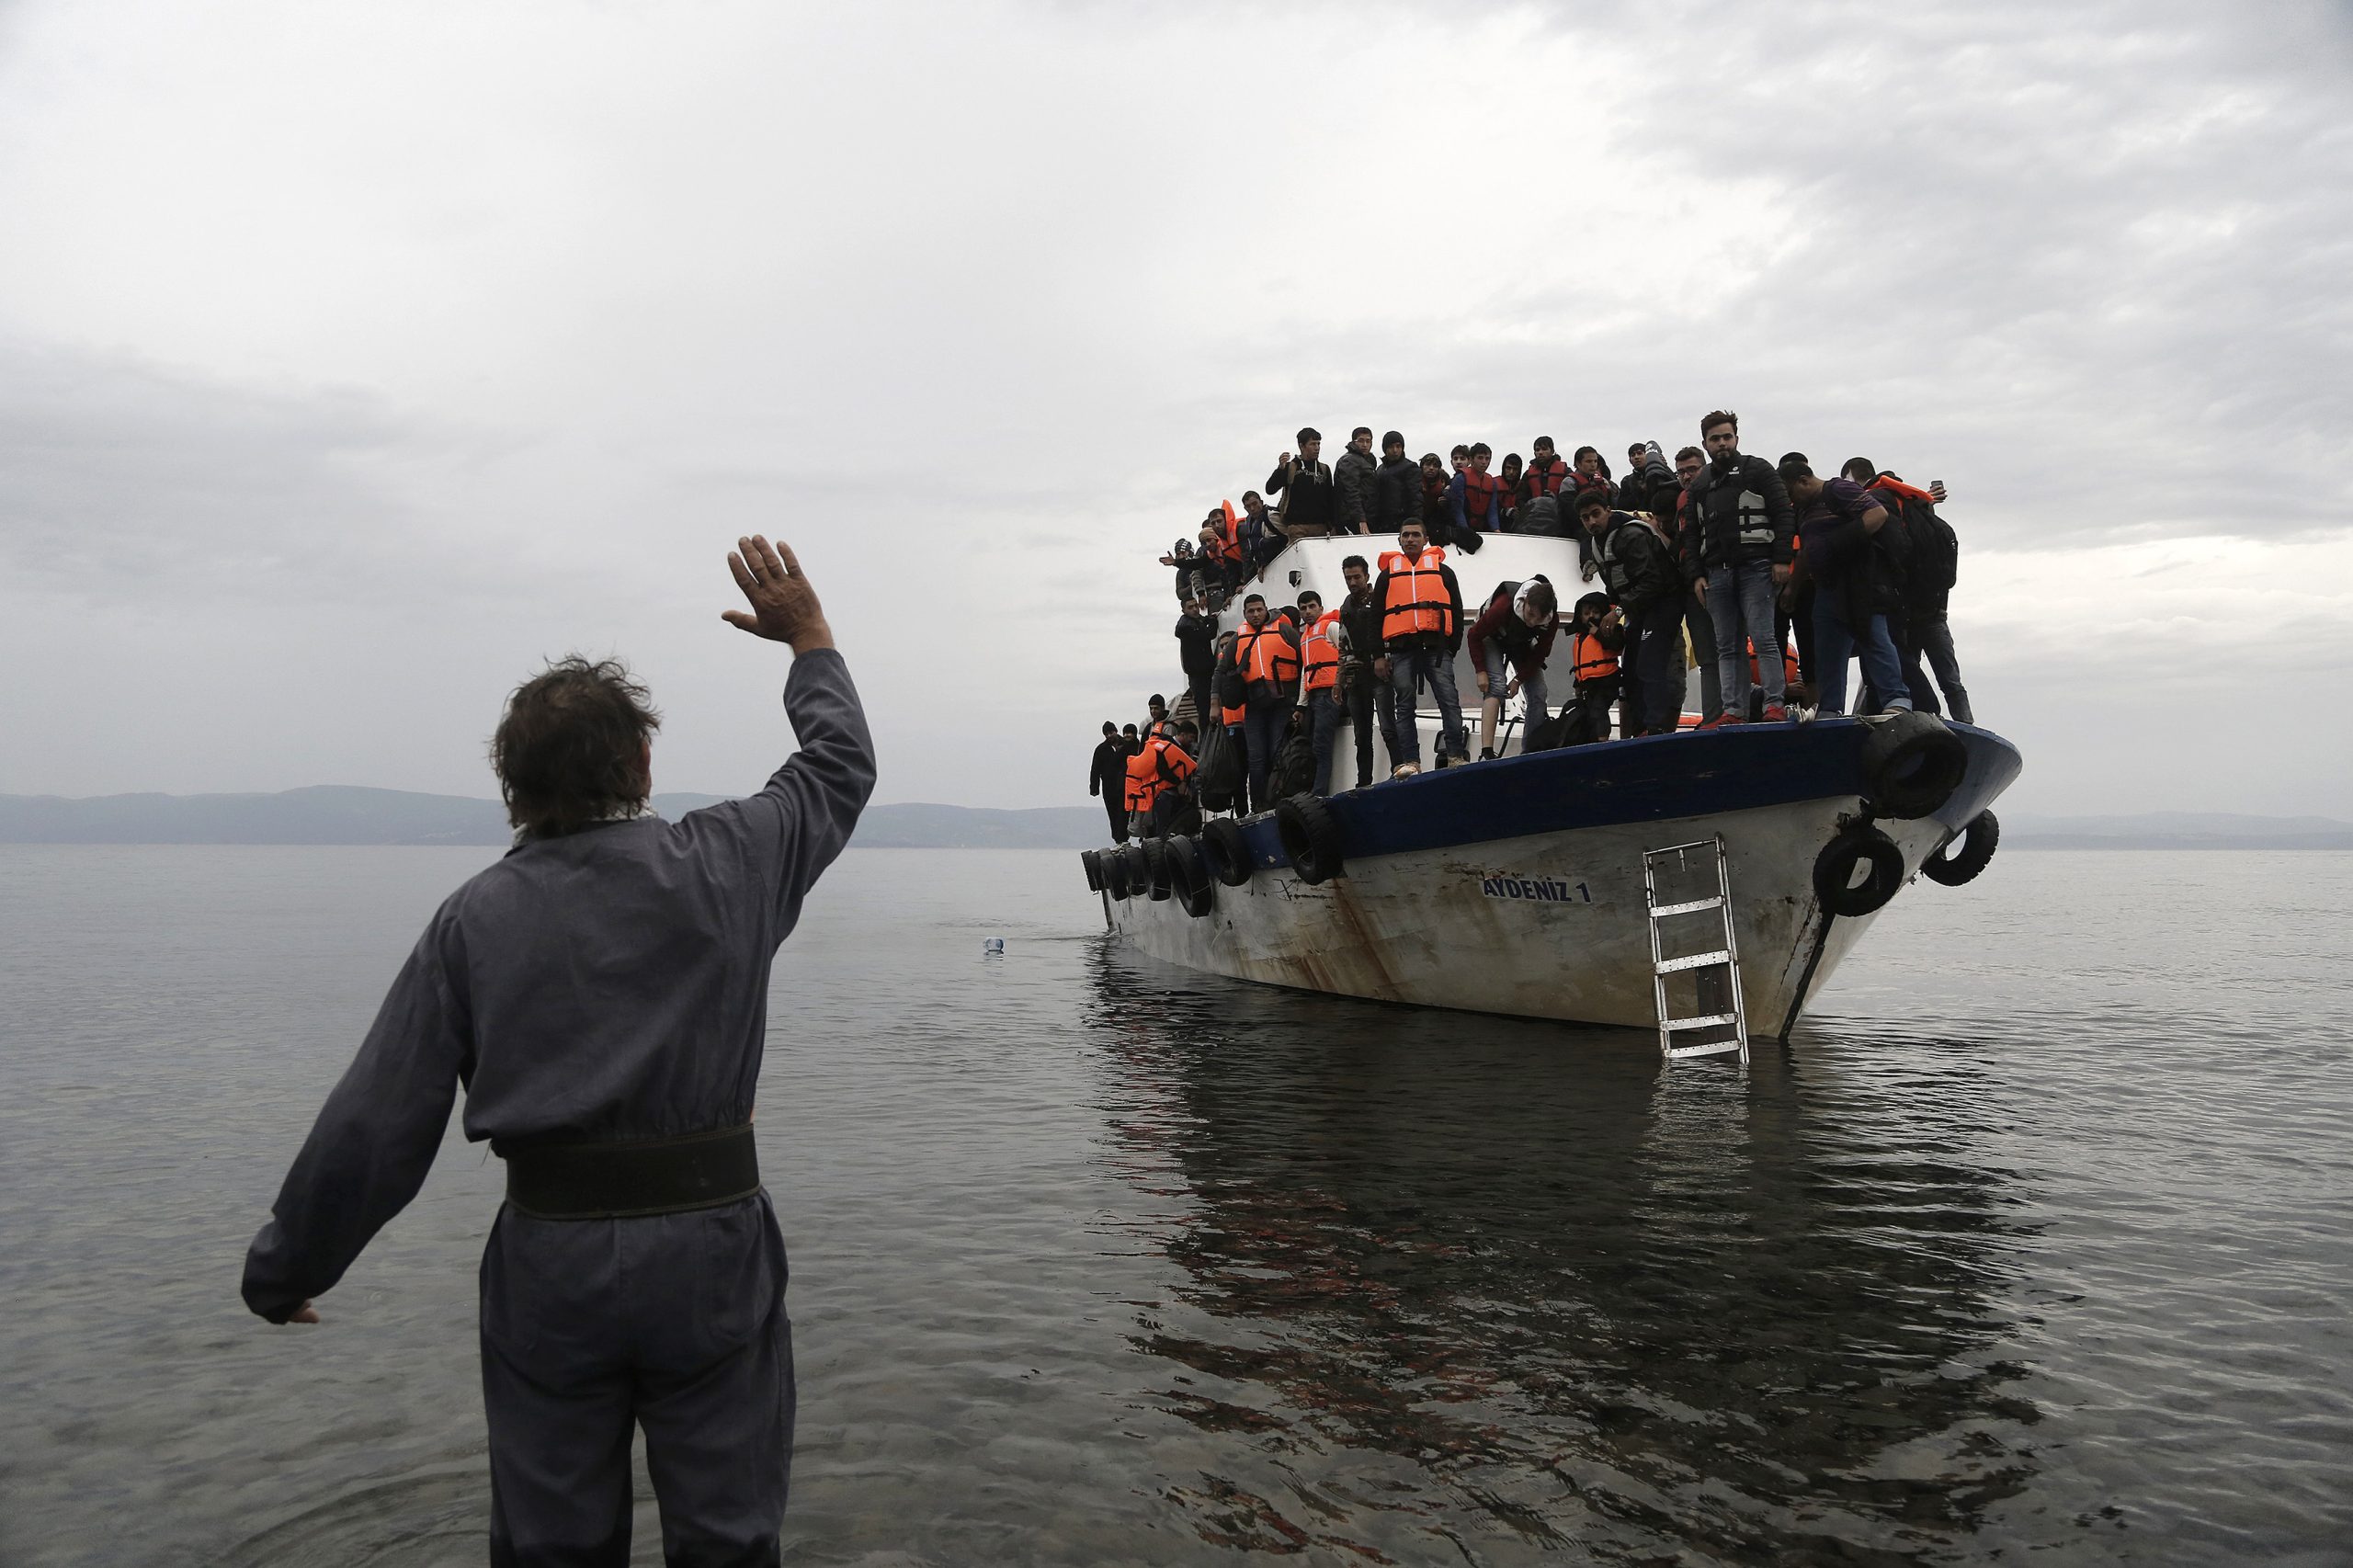 Προχωρούν άμεσα στην χρήση πλωτών «δομών» – Τα νησιά δεν χωράνε άλλους πρόσφυγες και μετανάστες!